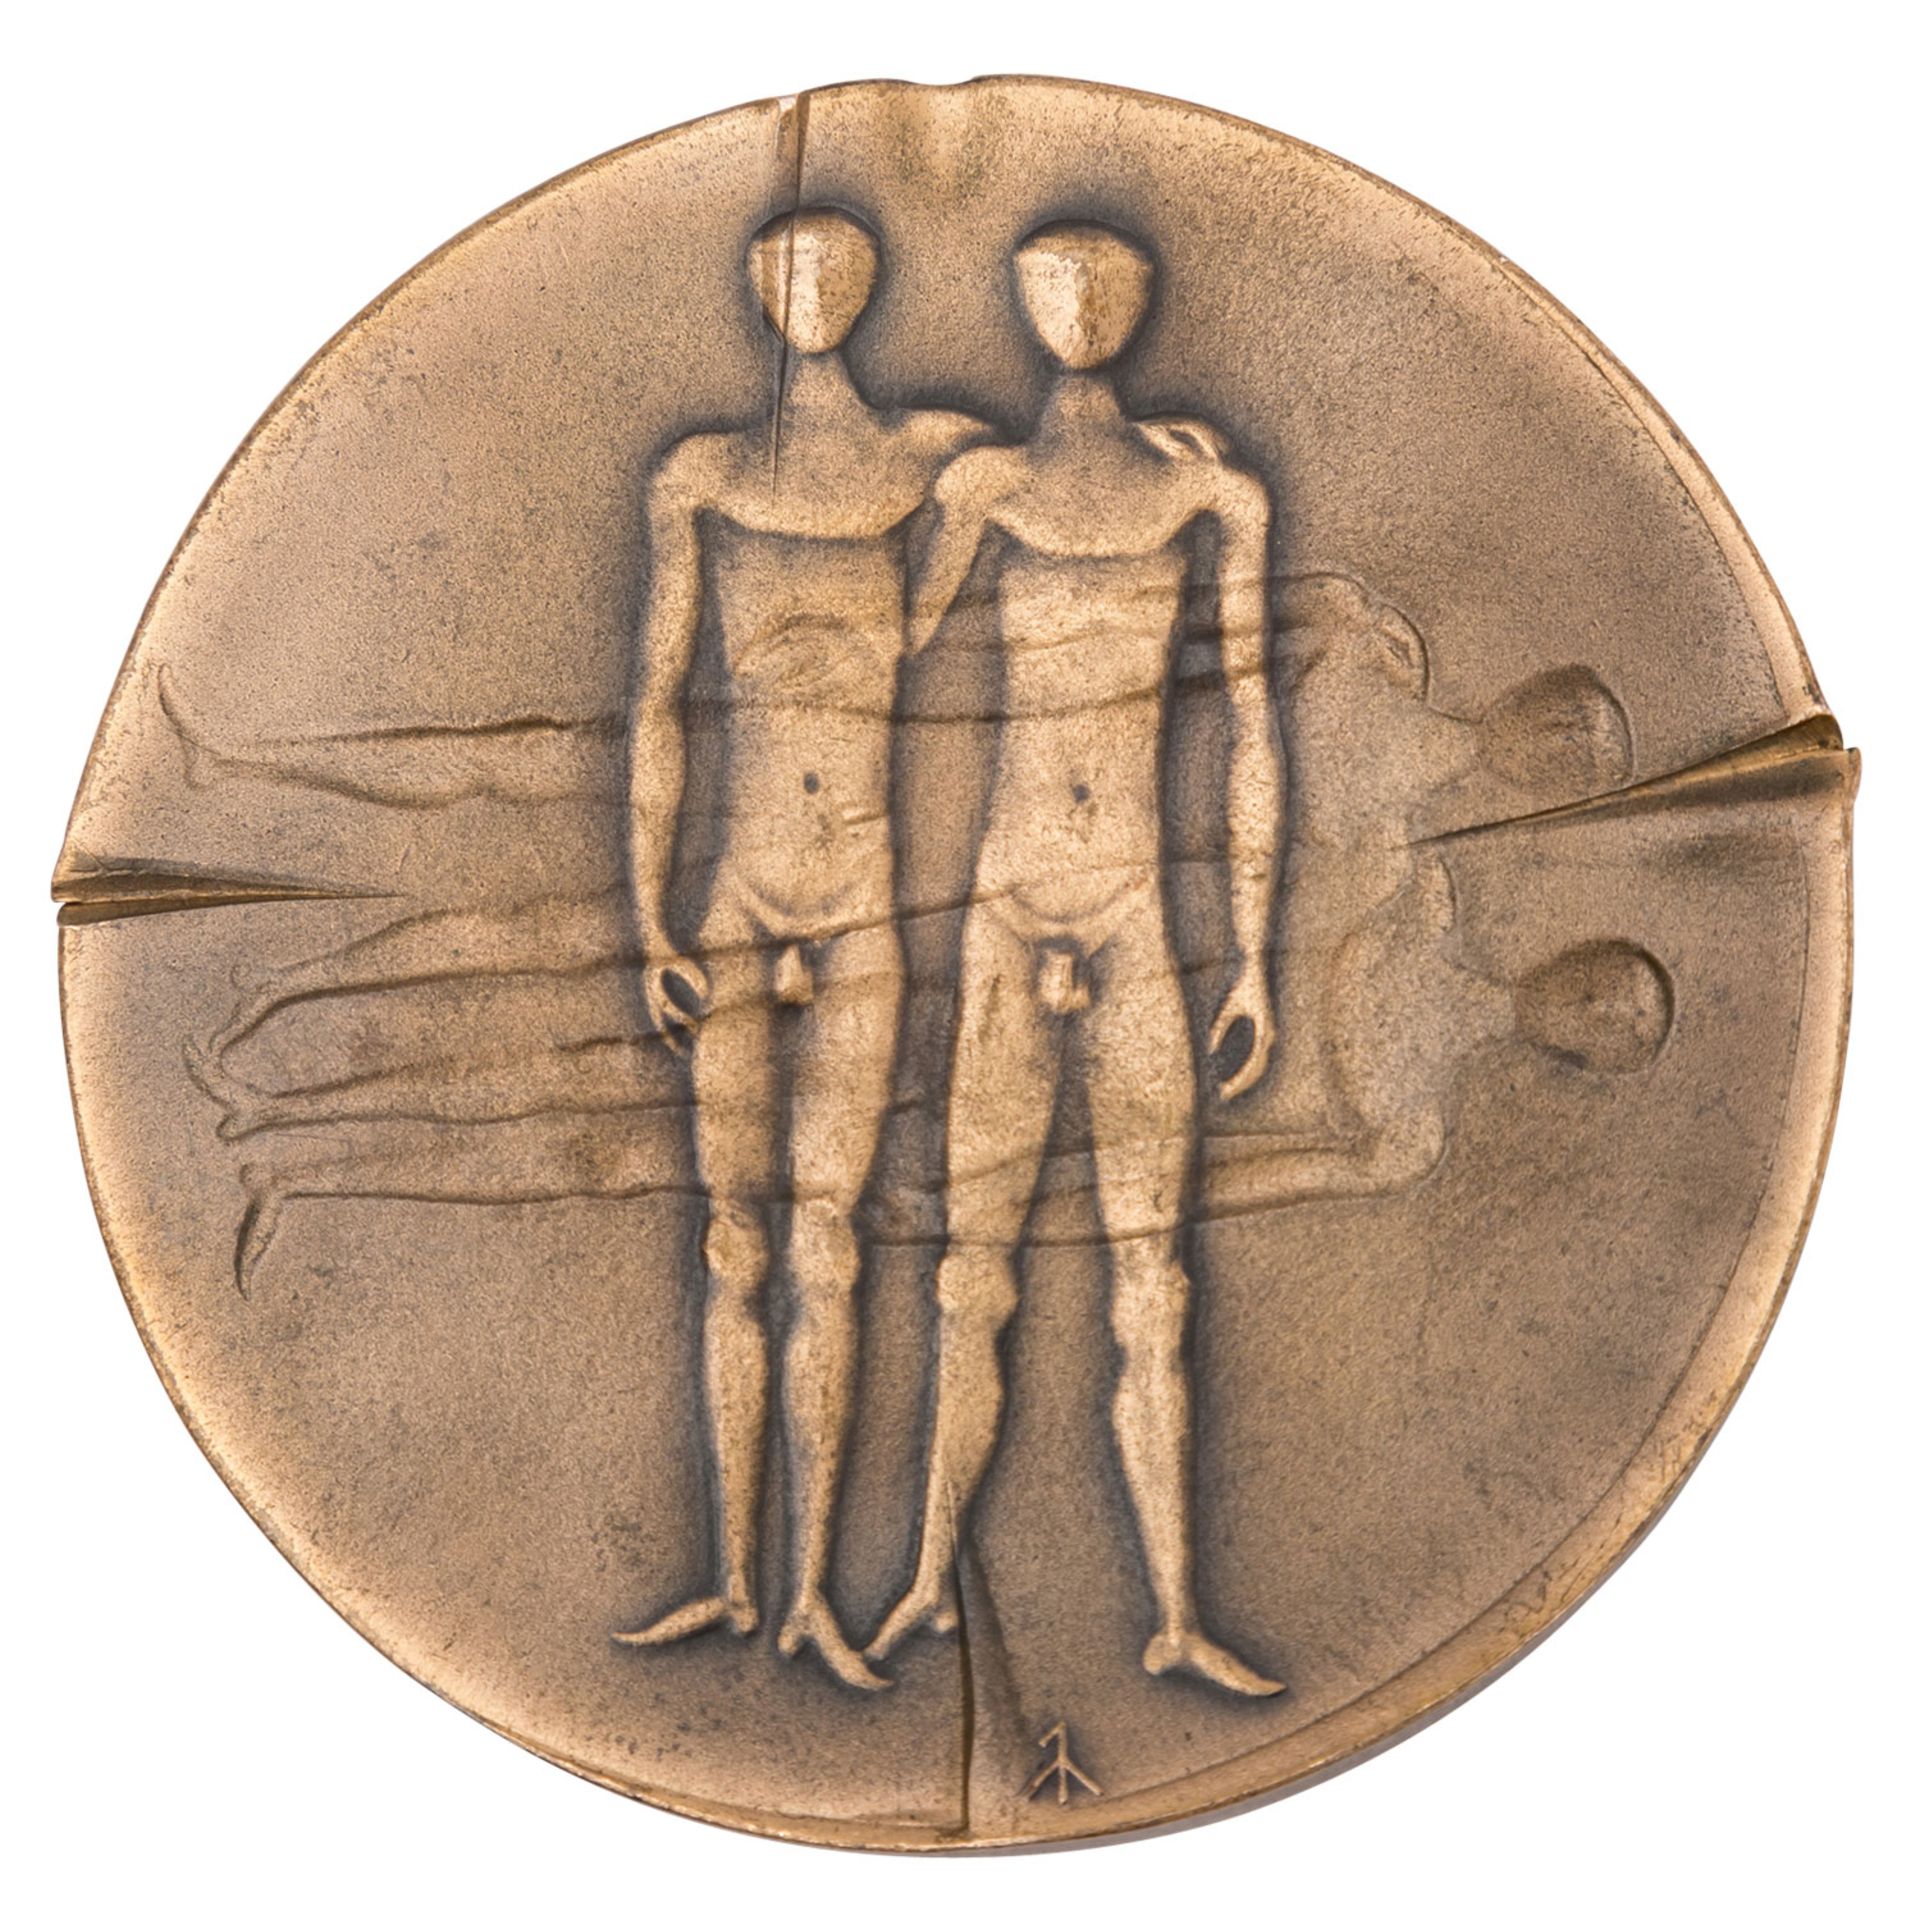 Höchst selten! Bronzefarbene Medaille der XX. Olympiade München 1972, - Image 8 of 9